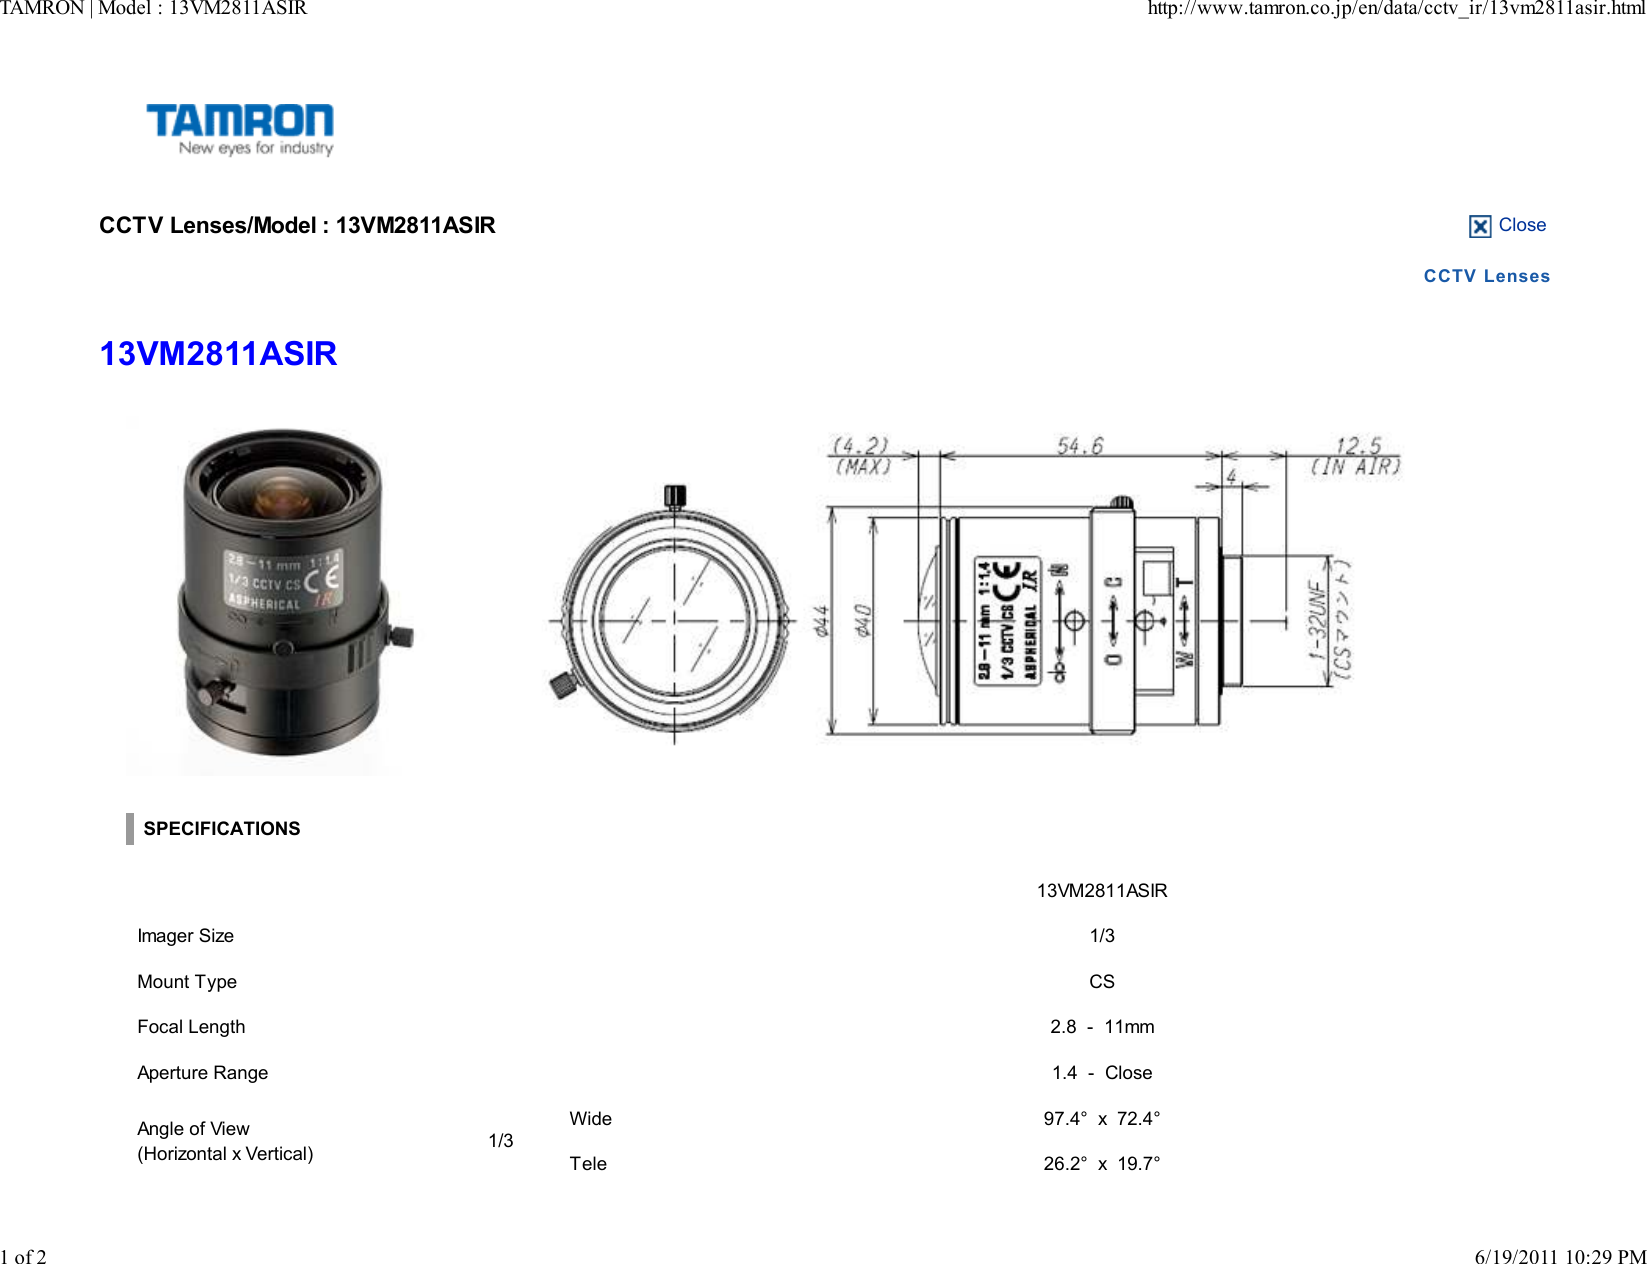 Page 1 of 2 - Tamron Tamron-Manual-Iris-Zoom-Lens-13Vm2811Asir-Users-Manual- |  Tamron-manual-iris-zoom-lens-13vm2811asir-users-manual